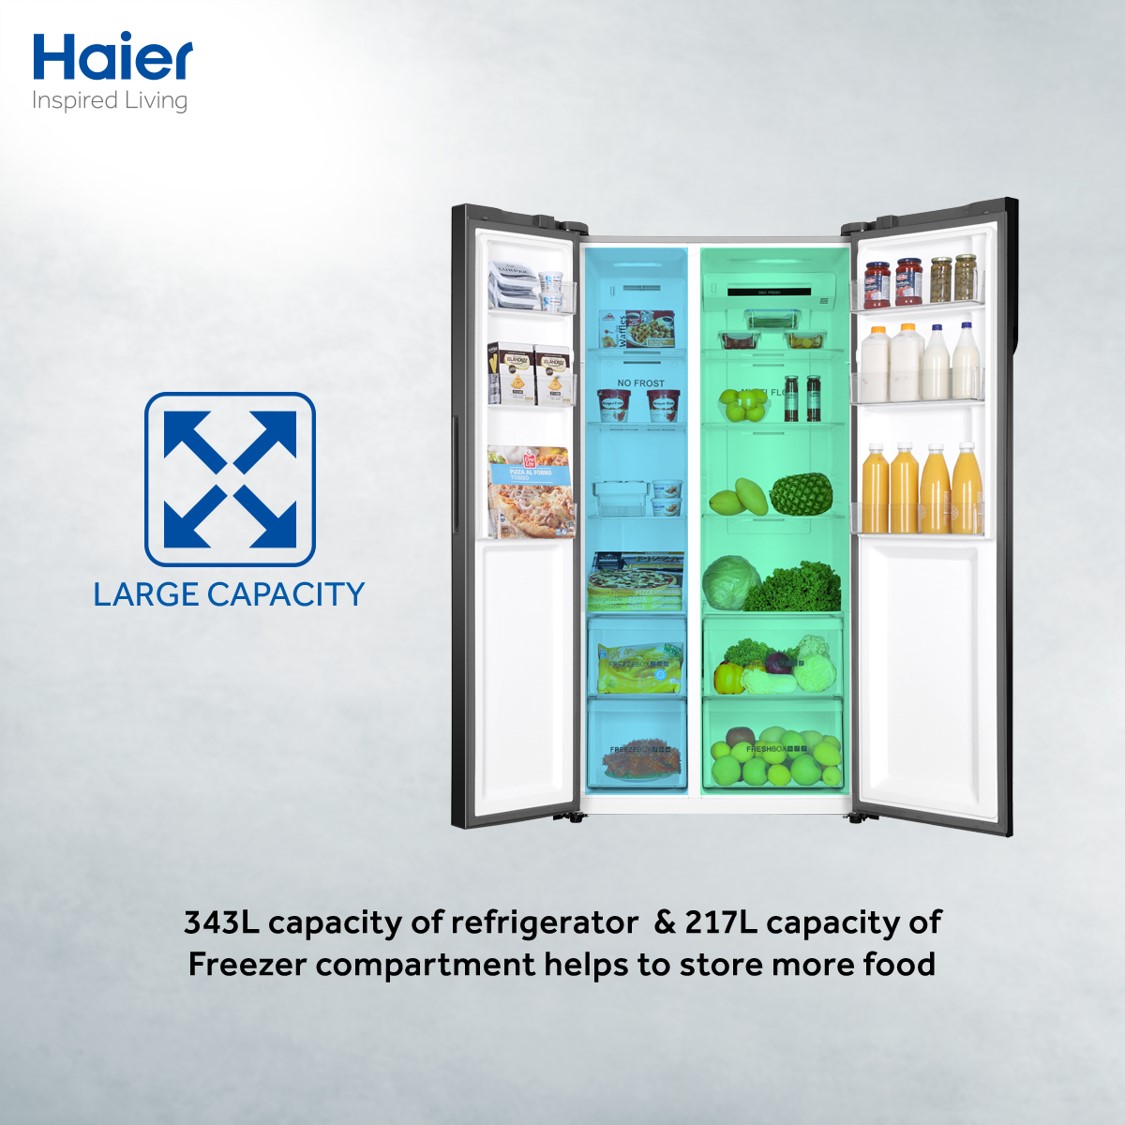 haier large capacity fridge